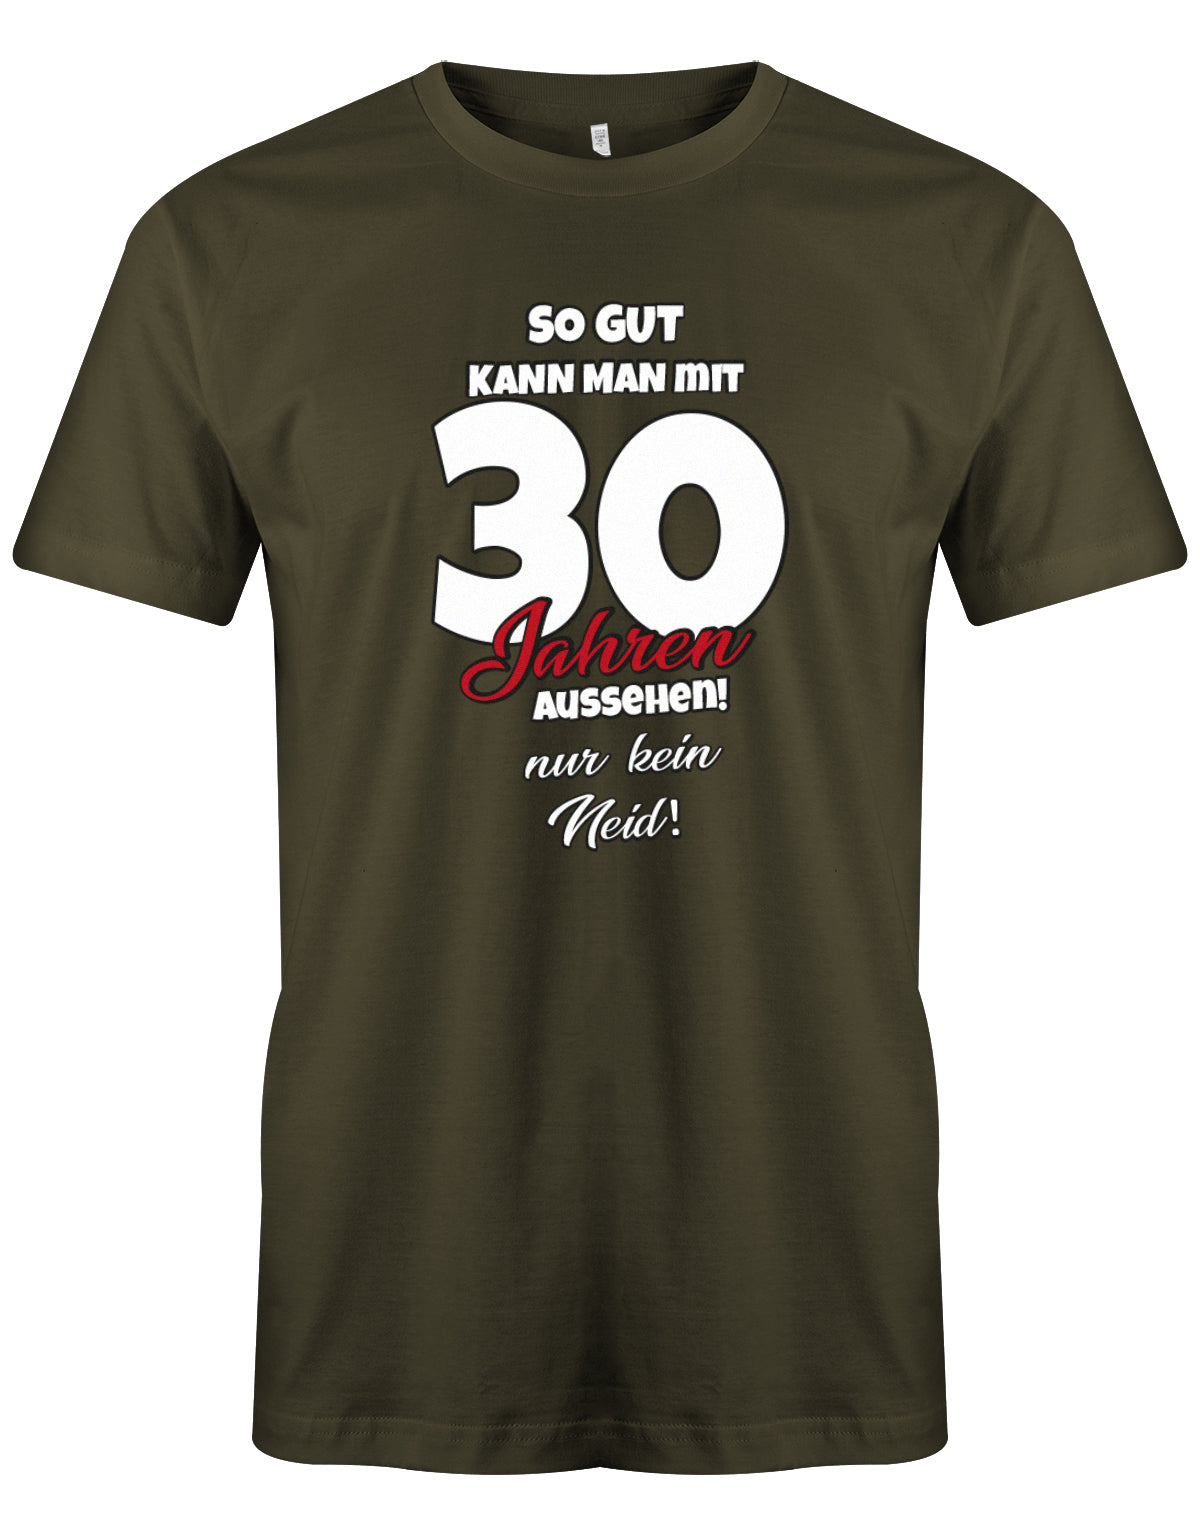 Lustiges T-Shirt zum 30 Geburtstag für den Mann Bedruckt mit So gut kann man mit 30 Jahren aussehen! Nur kein Neid Army